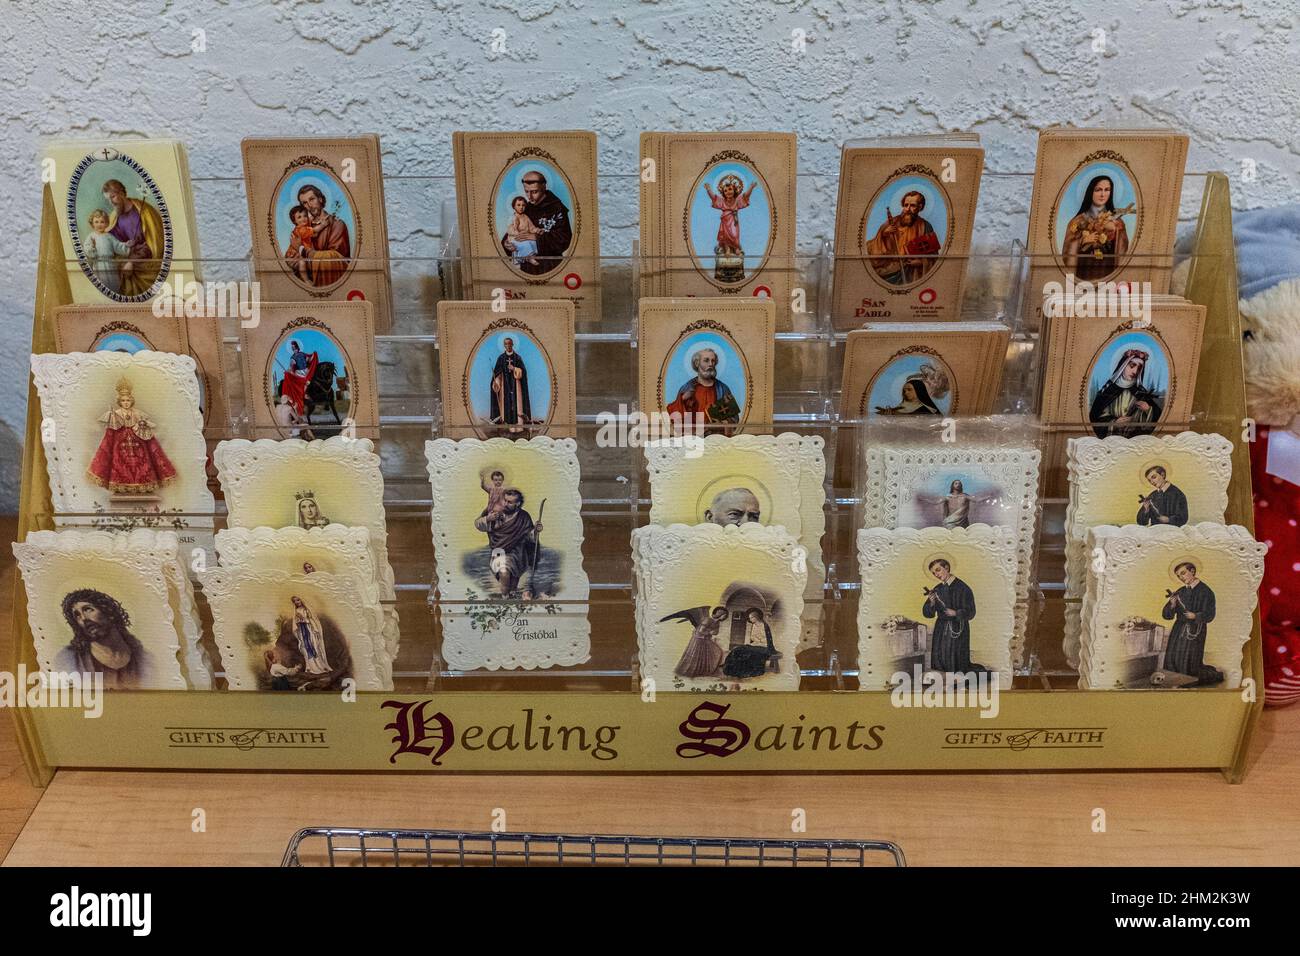 Articoli religiosi in vendita nel negozio di articoli da regalo della chiesa di San Felipe de Neri, centro storico di Albuquerque, New Mexico Foto Stock